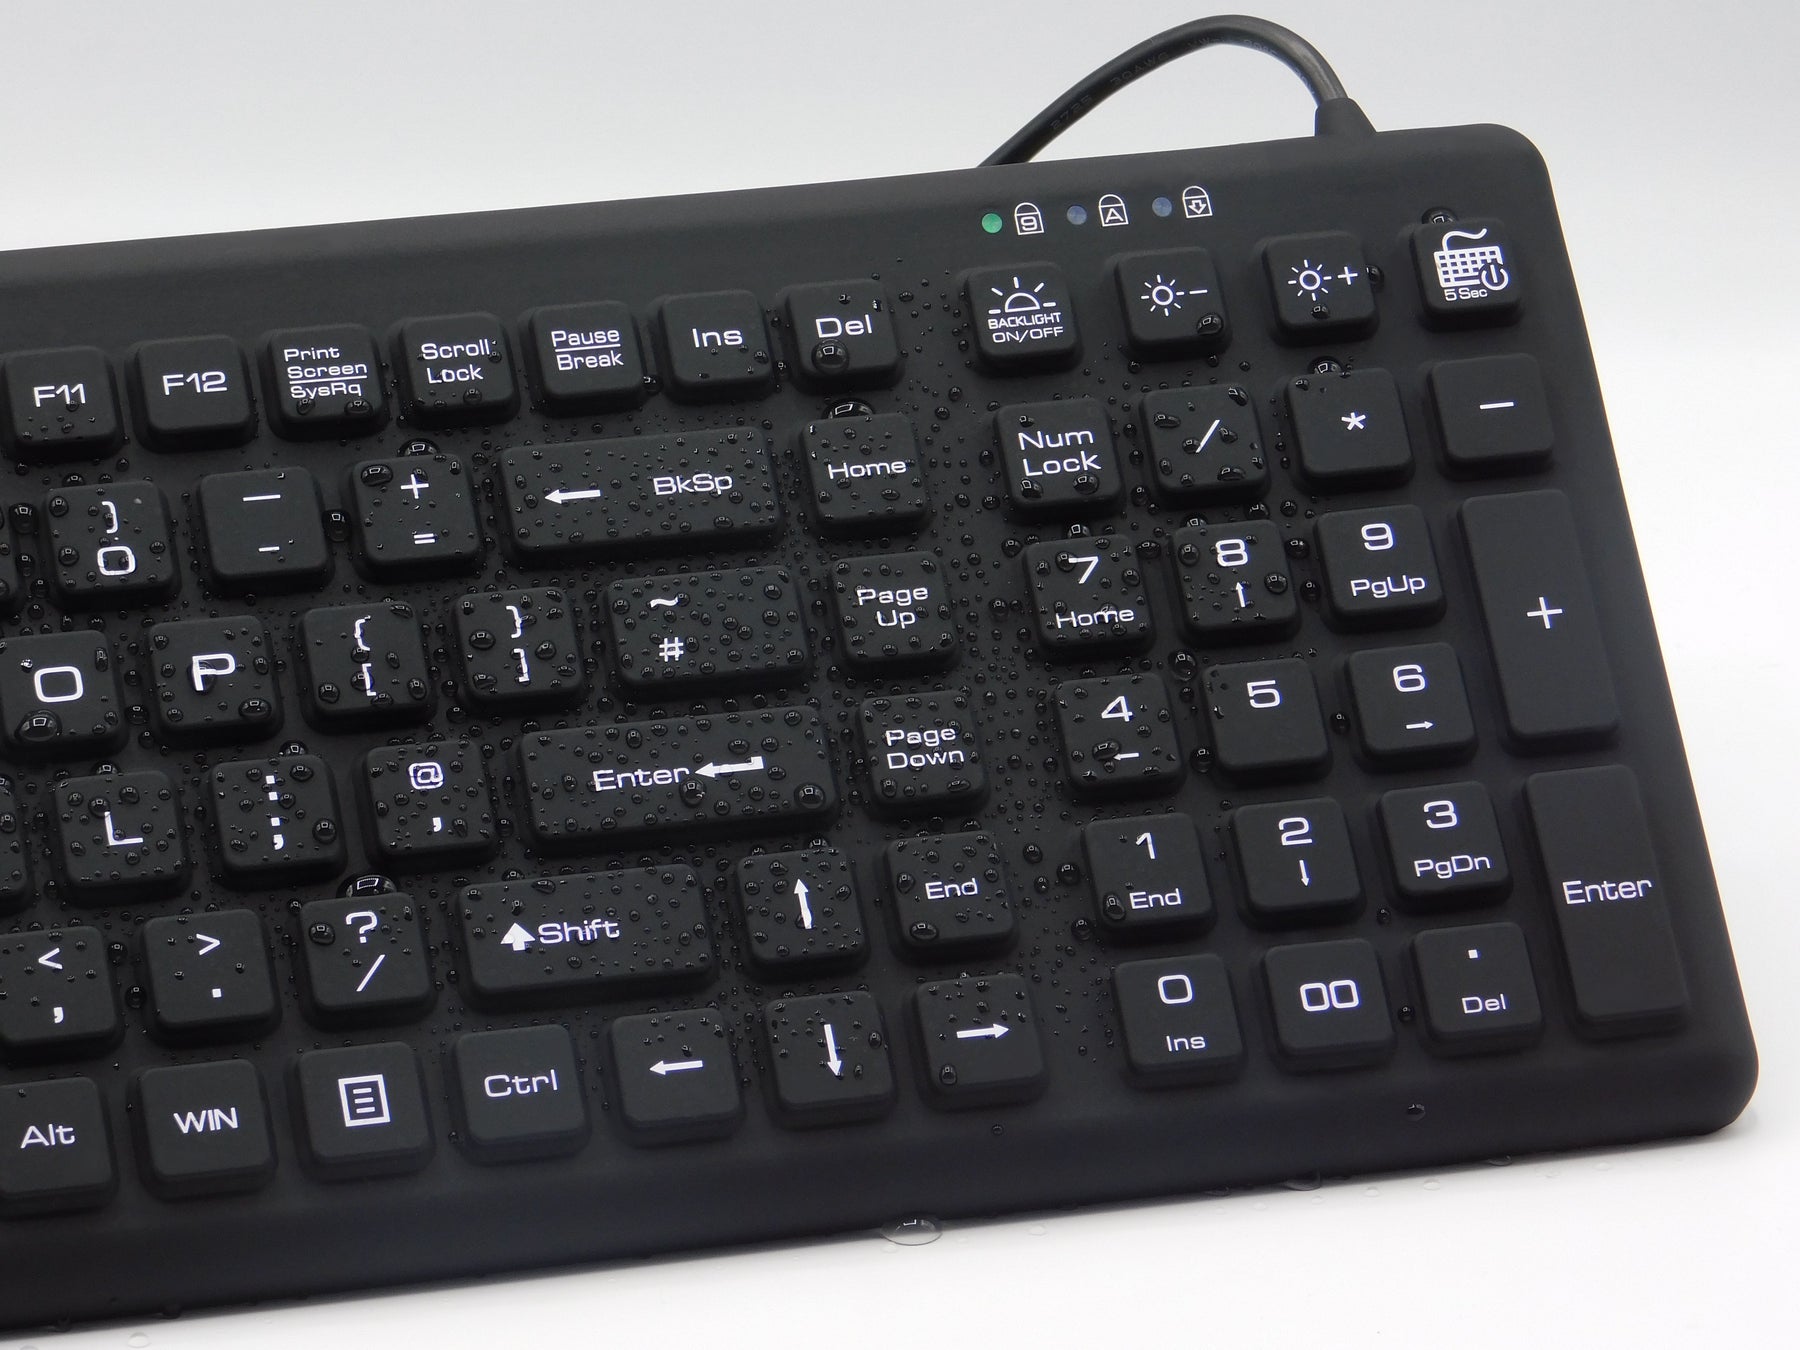 Waterproof Keyboard with backlight